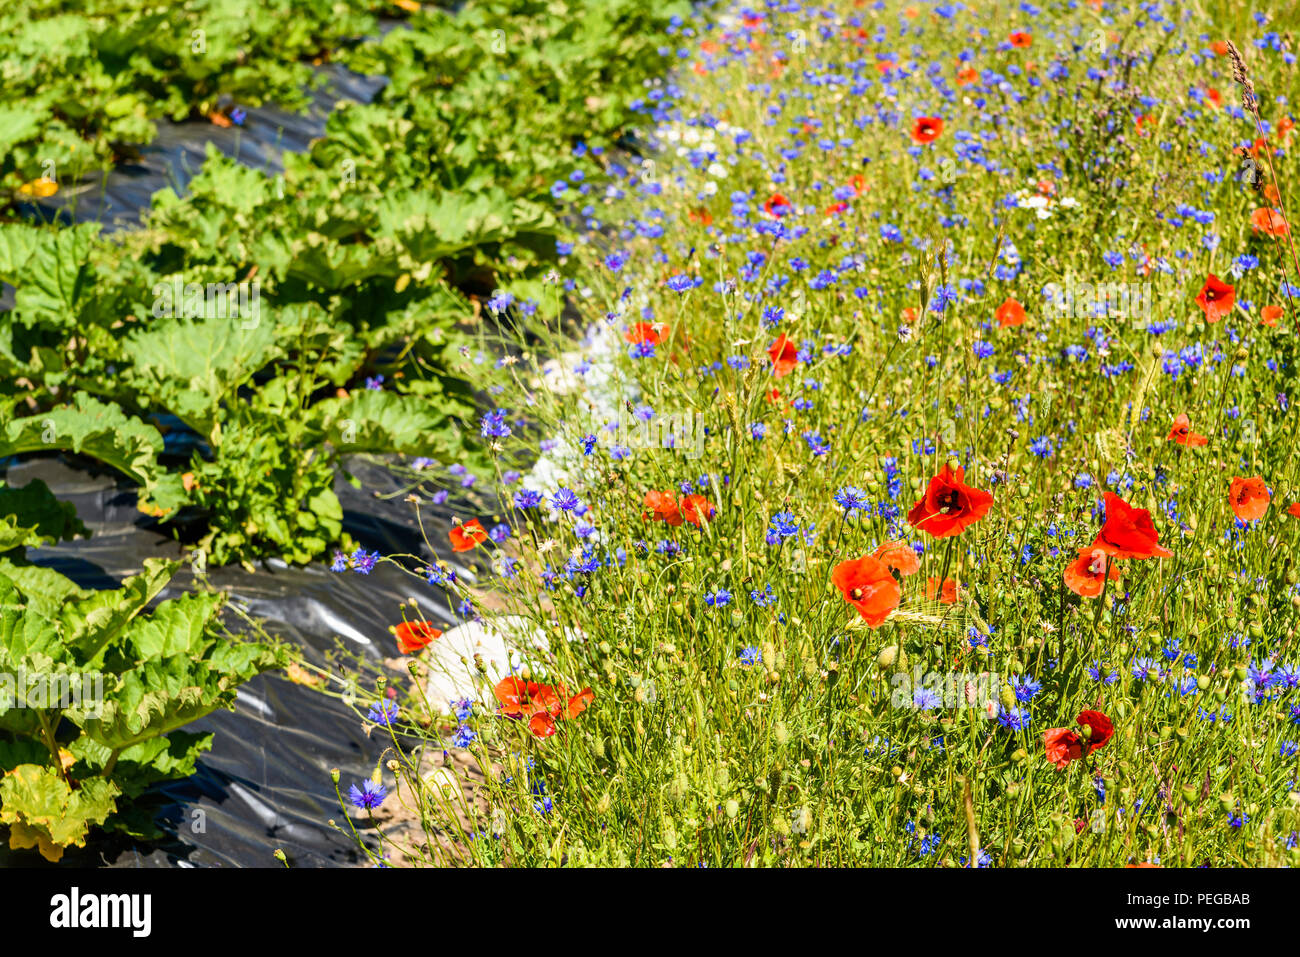 Prairie de fleurs de bleuet (Centaurea cyanus), le pavot (Papaver) et oxeye daisy (Leucanthemum vulgare). Ici à côté d'un champ de rhubarbe. Banque D'Images